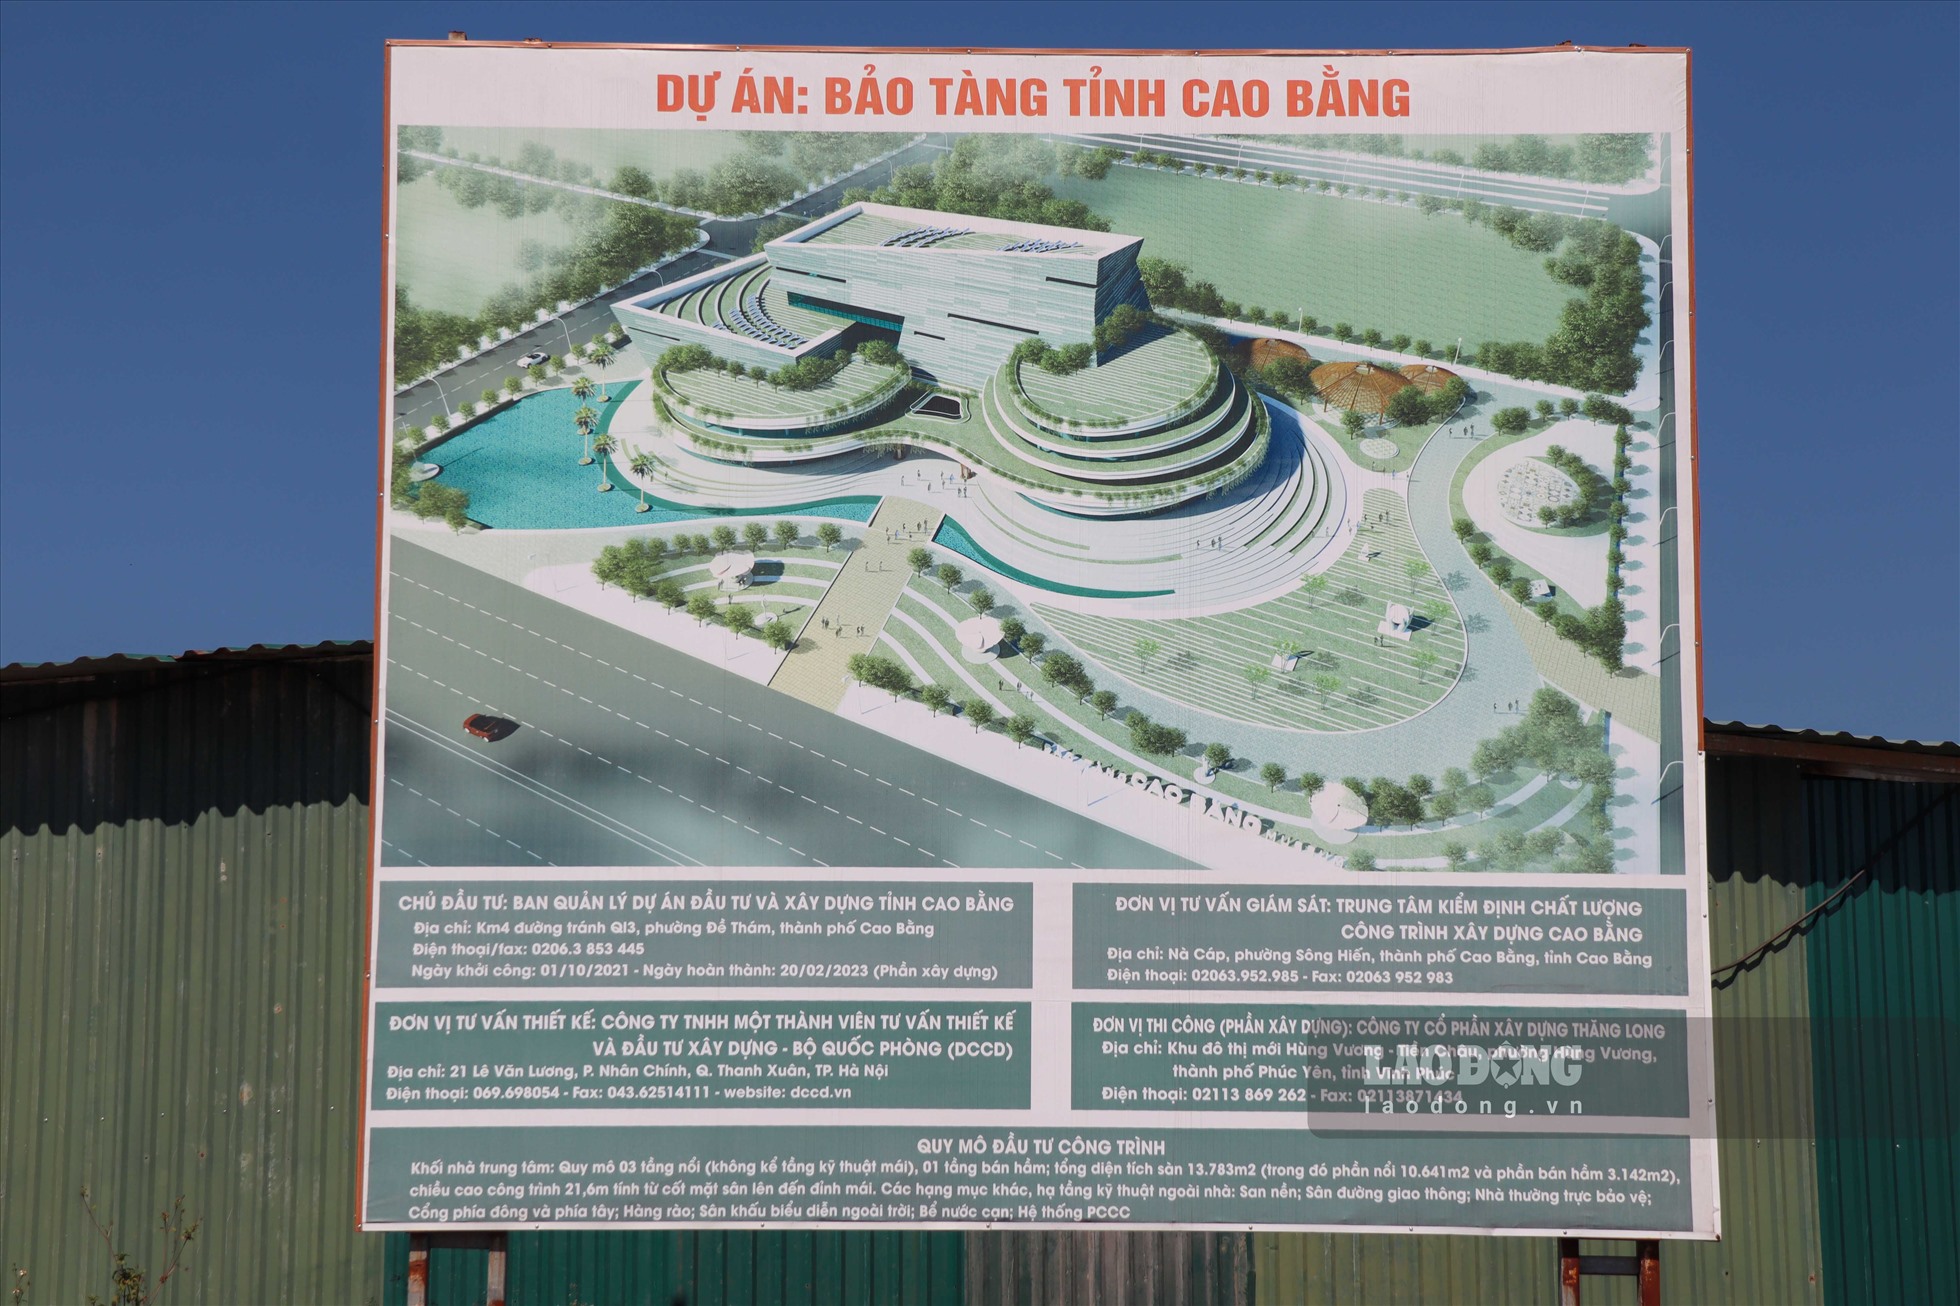 Vào ngày 3.11, PV đã có mặt ghi nhận tại công trình bảo tàng lớn nhất tỉnh Cao Bằng từ trước tới nay. Đại dự án tọa lạc tại khu Trung tâm hành chính thuộc phường Đề Thám, TP.Cao Bằng.